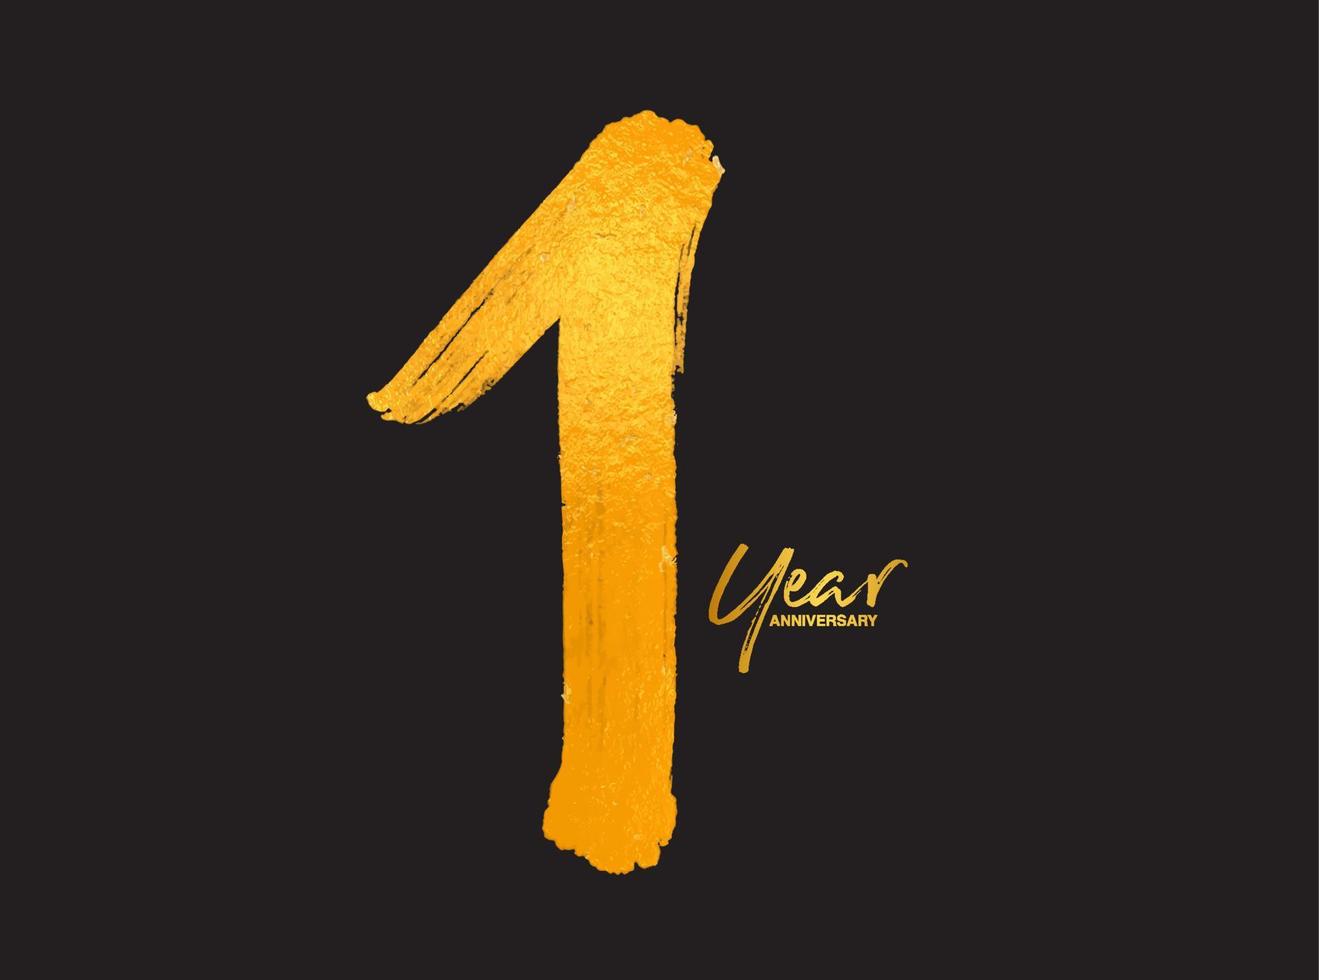 oro 1 anno anniversario celebrazione modello vettoriale, 1 anno logo design, 1° compleanno, lettere dorate numeri pennello disegno schizzo disegnato a mano, numero logo design illustrazione vettoriale